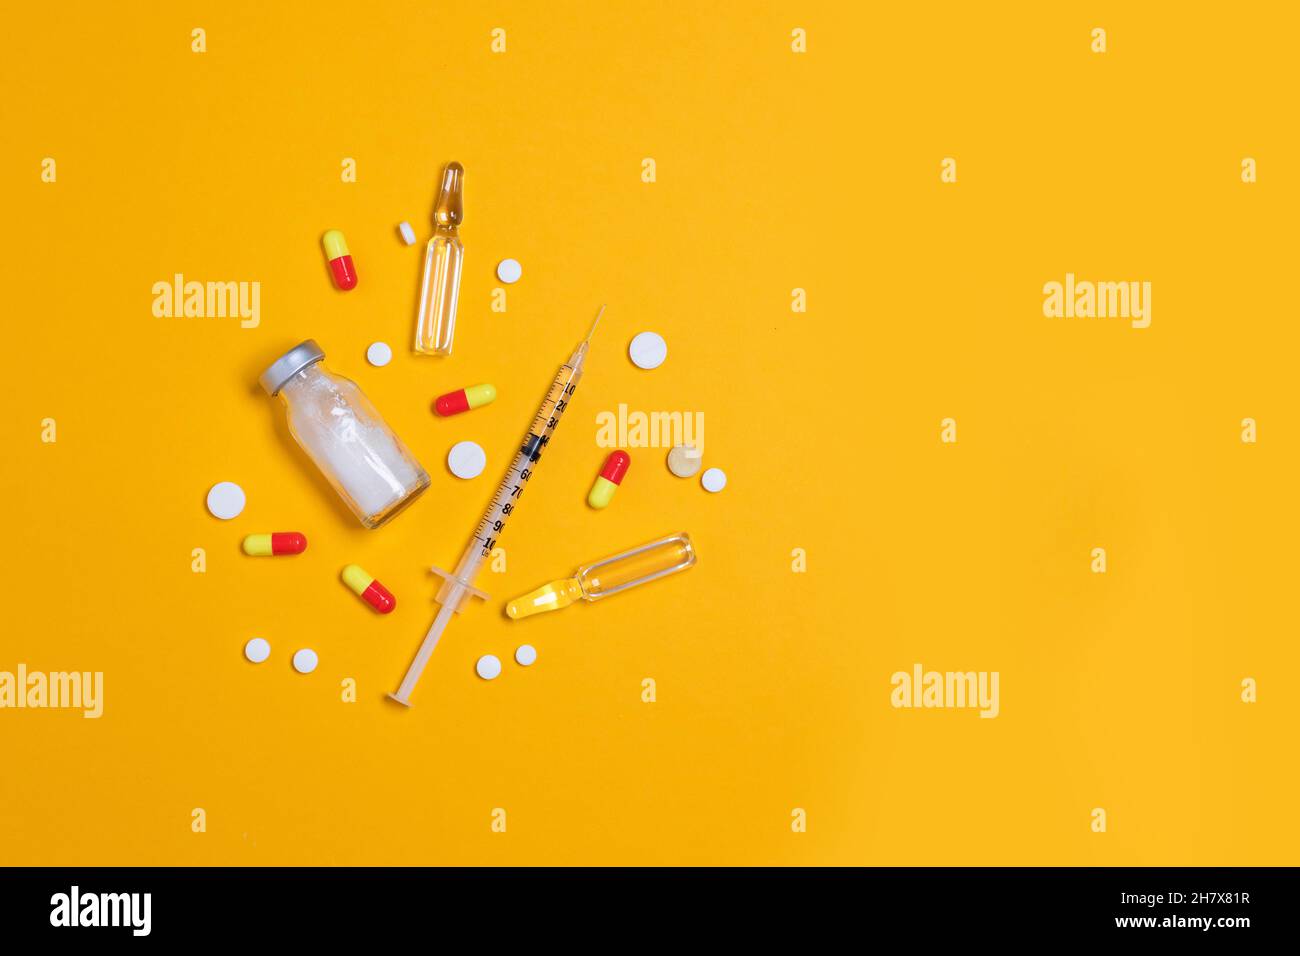 Impfstoff und Spritze, verschiedene pharmazeutische Medikamente Pillen, Tabletten und Kapseln gelber Hintergrund. Gesundheitswesen und medizinisches Konzept. Stockfoto